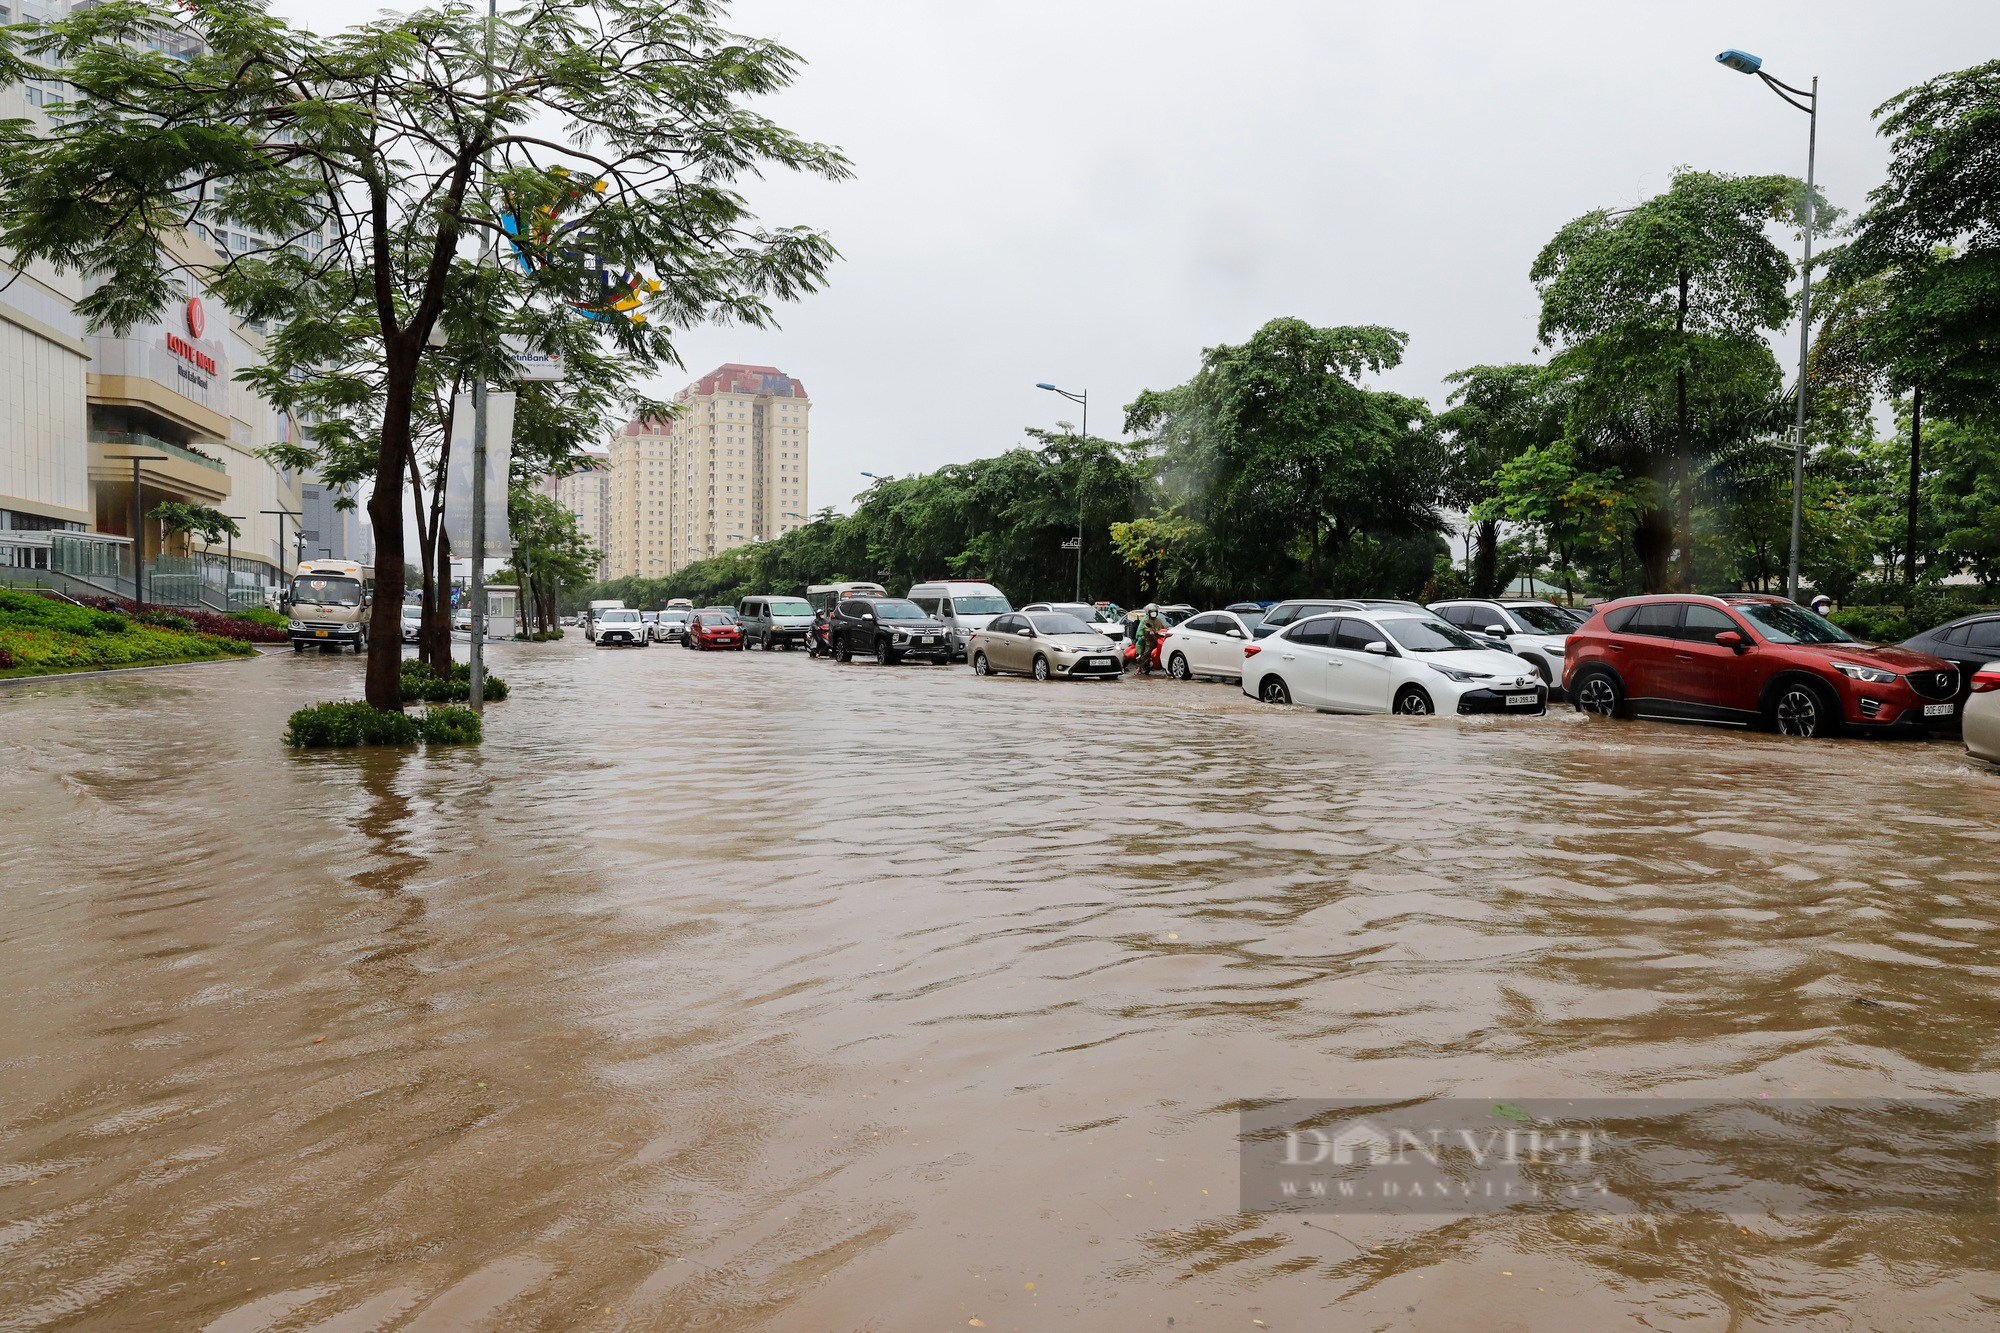 Đường trước trung tâm thương mại lớn nhất Hà Nội ngập sâu kéo dài hàng Km - Ảnh 1.